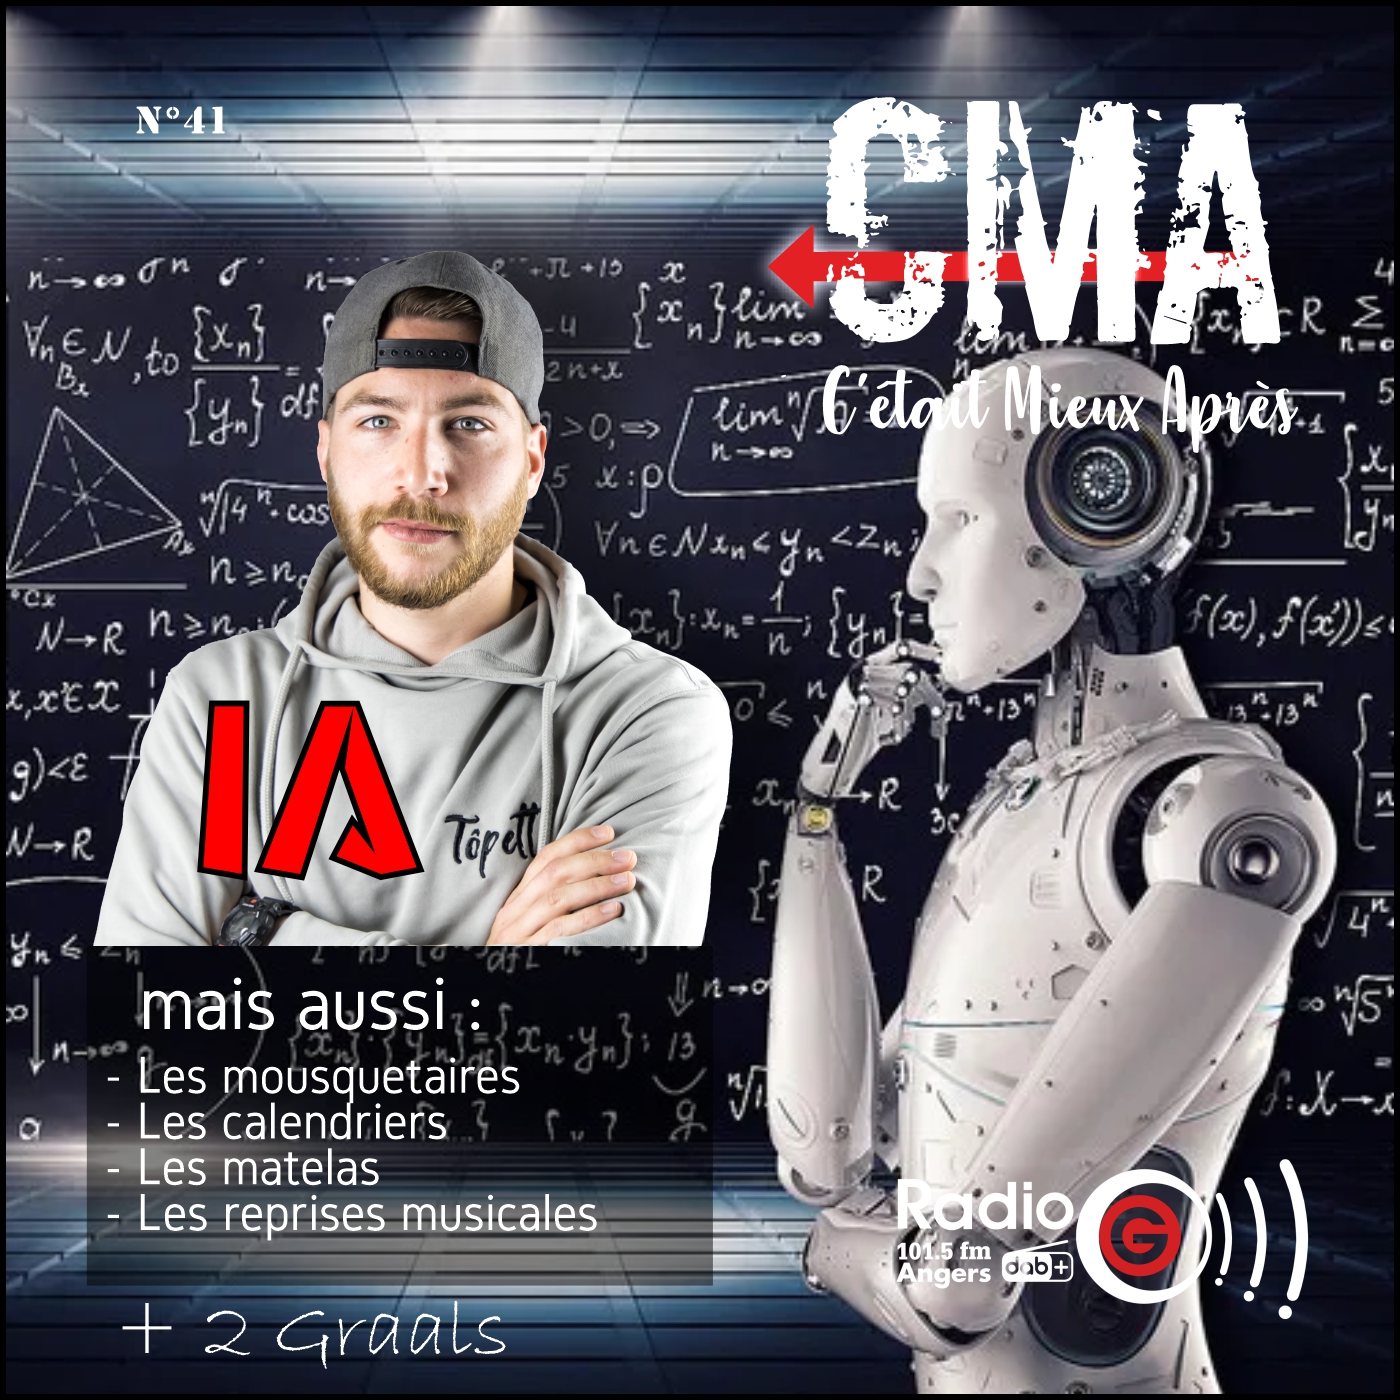 CMA du 18 avril 2023 CMA, c'était mieux après, l'émission qui revient sur l'origine des choses - Radio G! Angers. CMA du 18 avril 2023